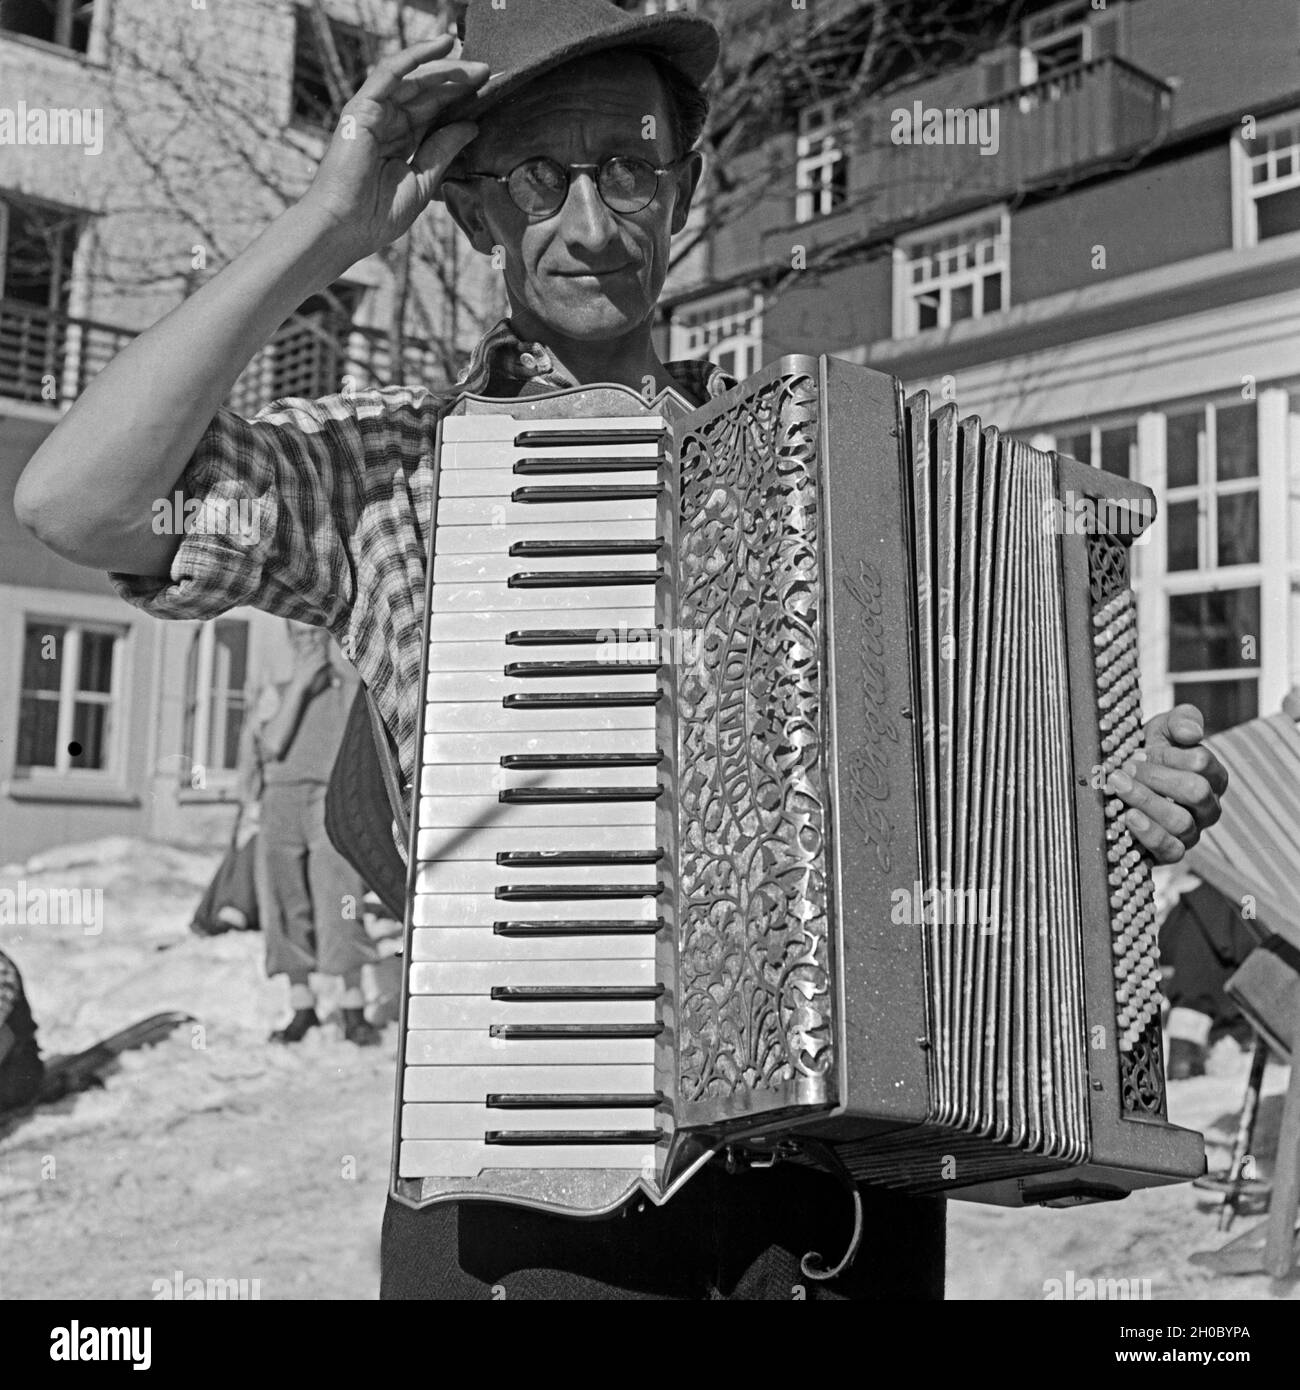 Der Akkordeonspieler vom Hotel Feldbergerhof begleitet die Skifahrer bei ihrer Freizeit, Deutschland 1930er Jahre. The accordion player accompanies the ski tourists at their leisure time Germany 1930s. Stock Photo